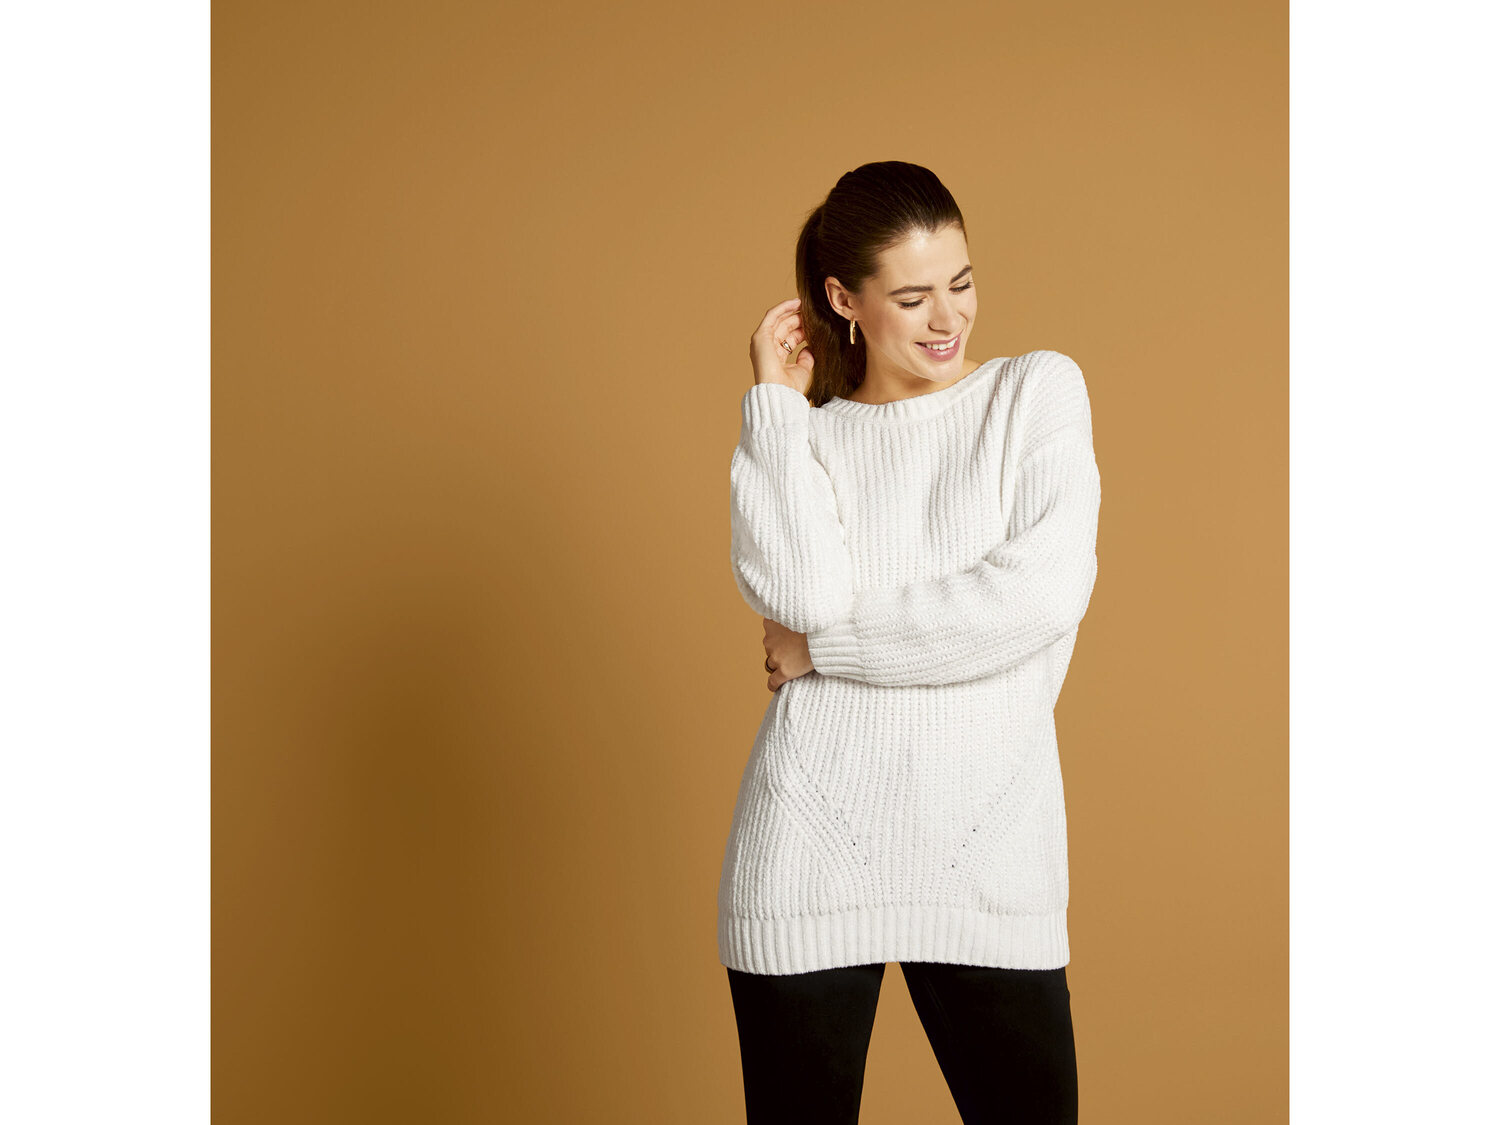 Sweter z szenili Esmara, cena 39,99 PLN 
- rozmiary: S-L
- modny, gruby splot
- ...